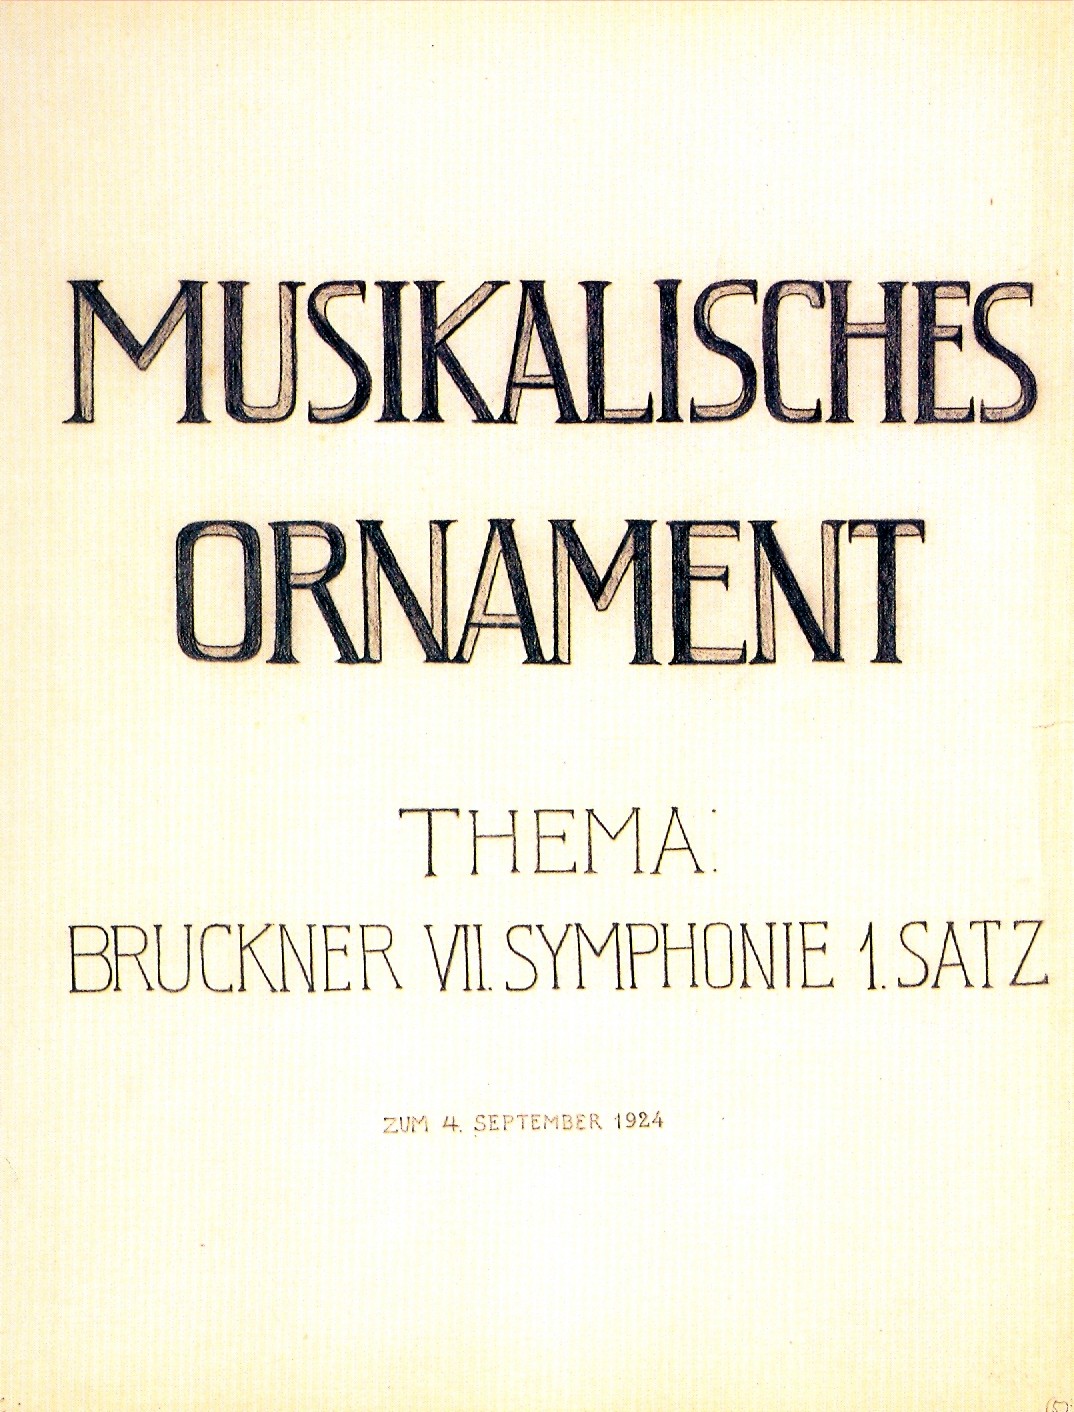 Bruckner Symphony No. 7 - First Movement - Example No. 1